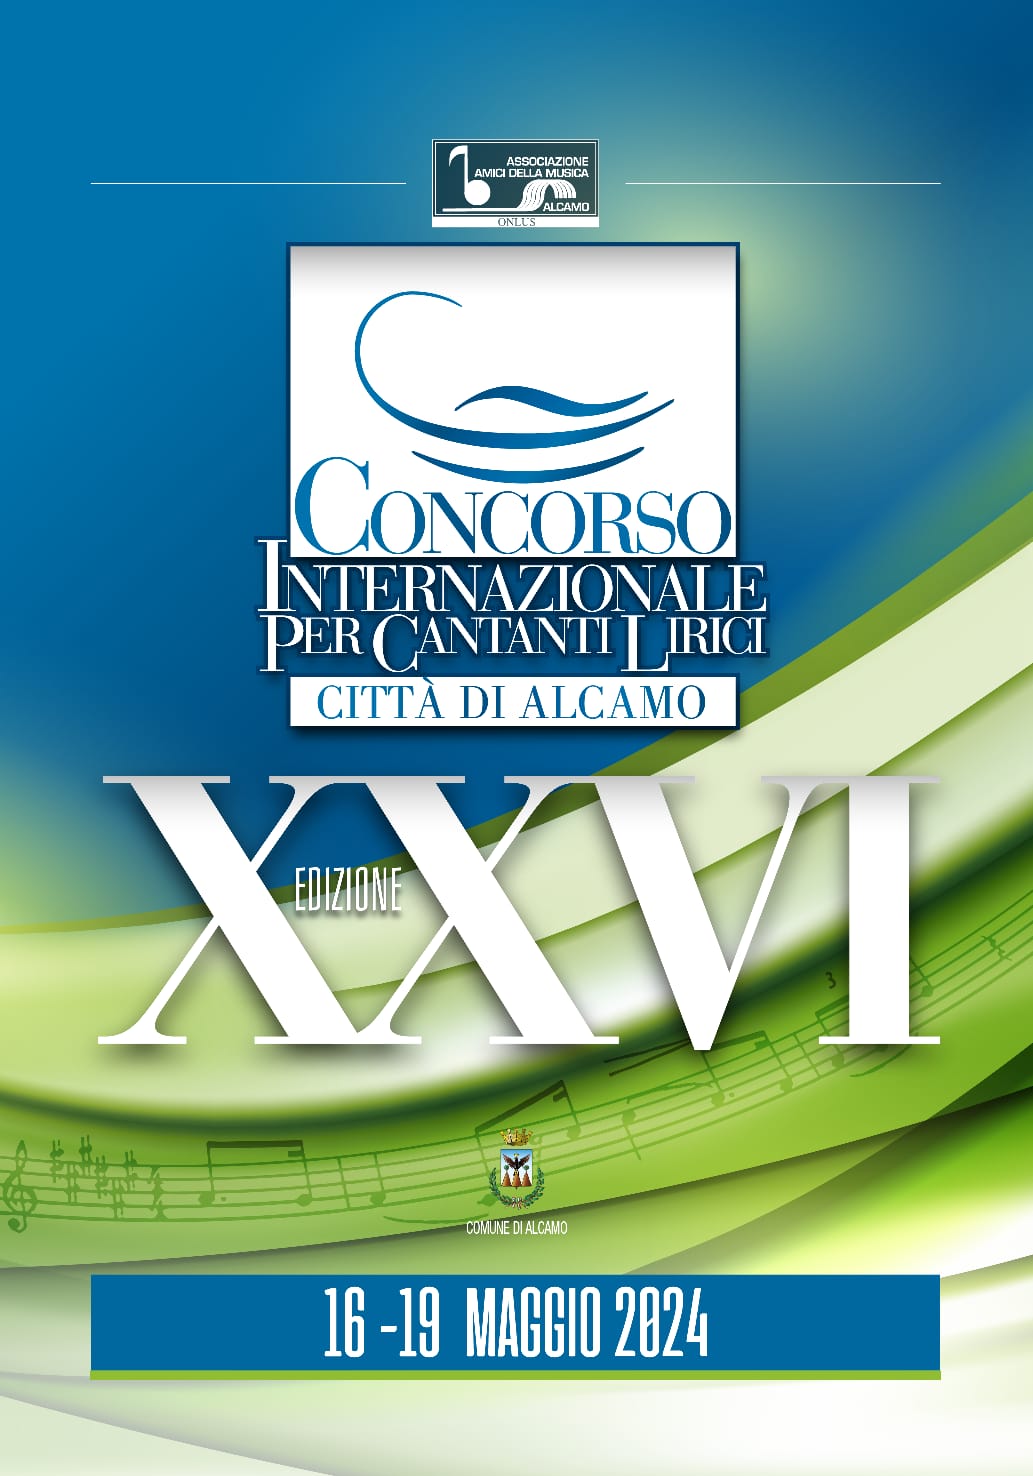 Prende il via la XXVI edizione del Concorso Internazionale per Cantanti Lirici “Città di Alcamo